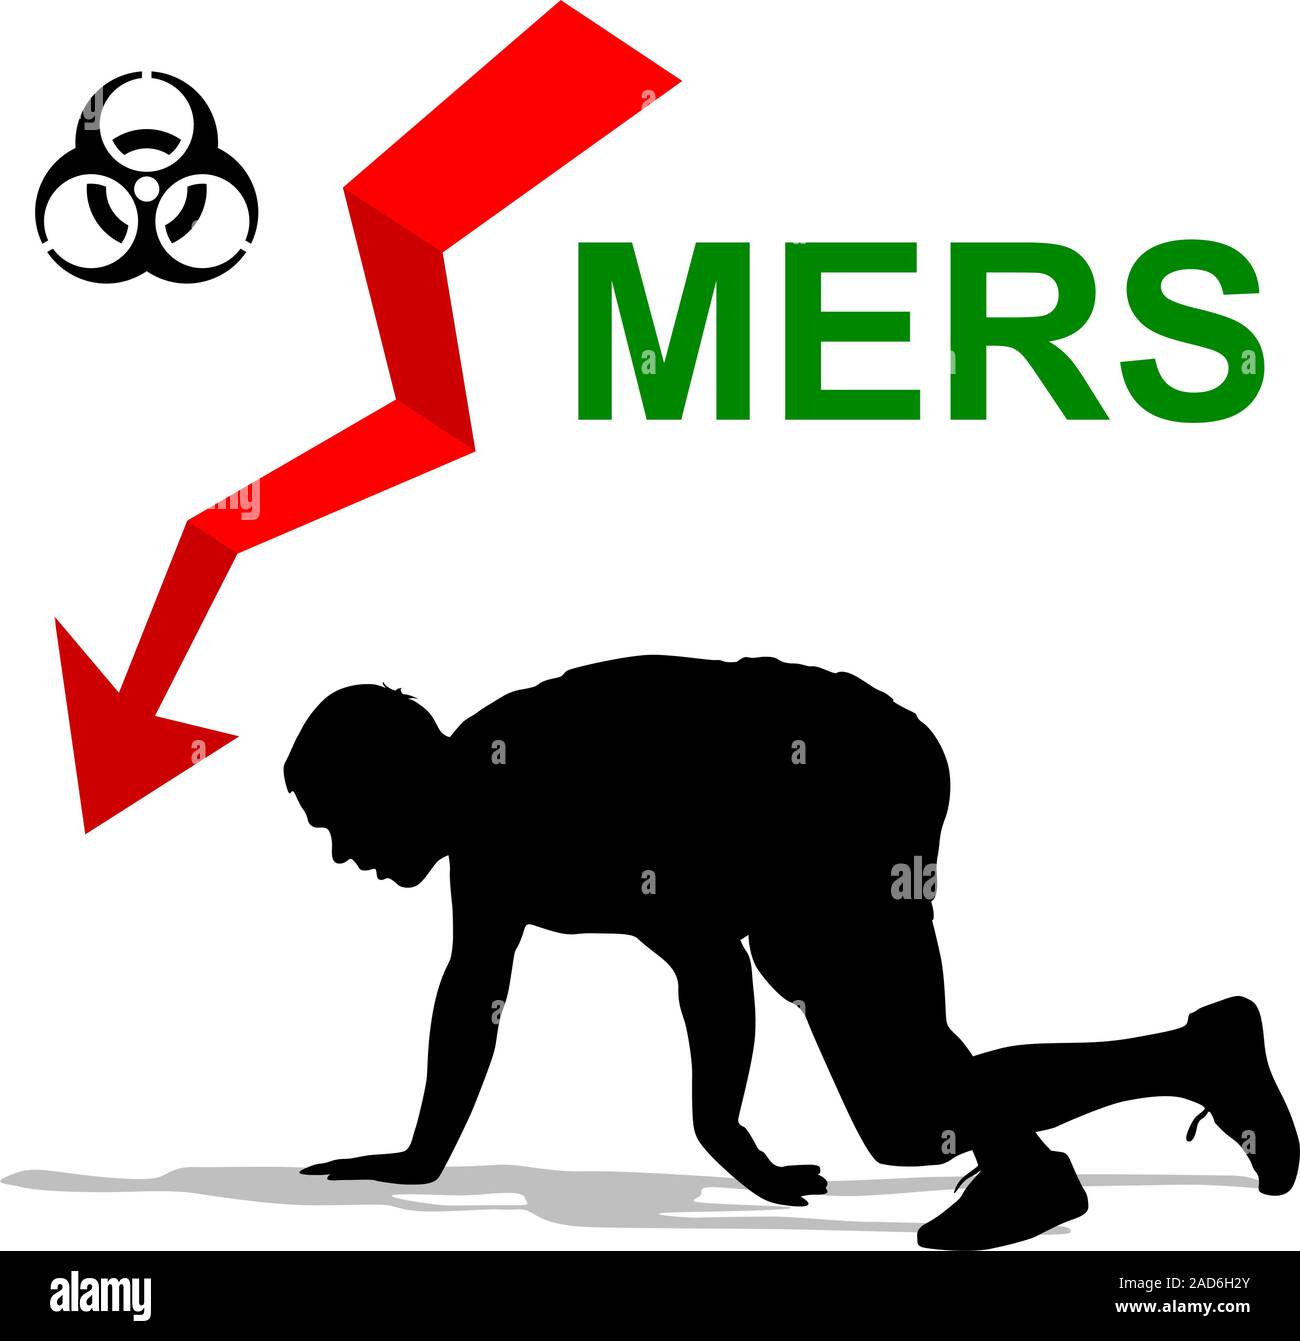 Mann schlug Mers Corona Virus unterzeichnen. Vector Illustration. Stock Vektor